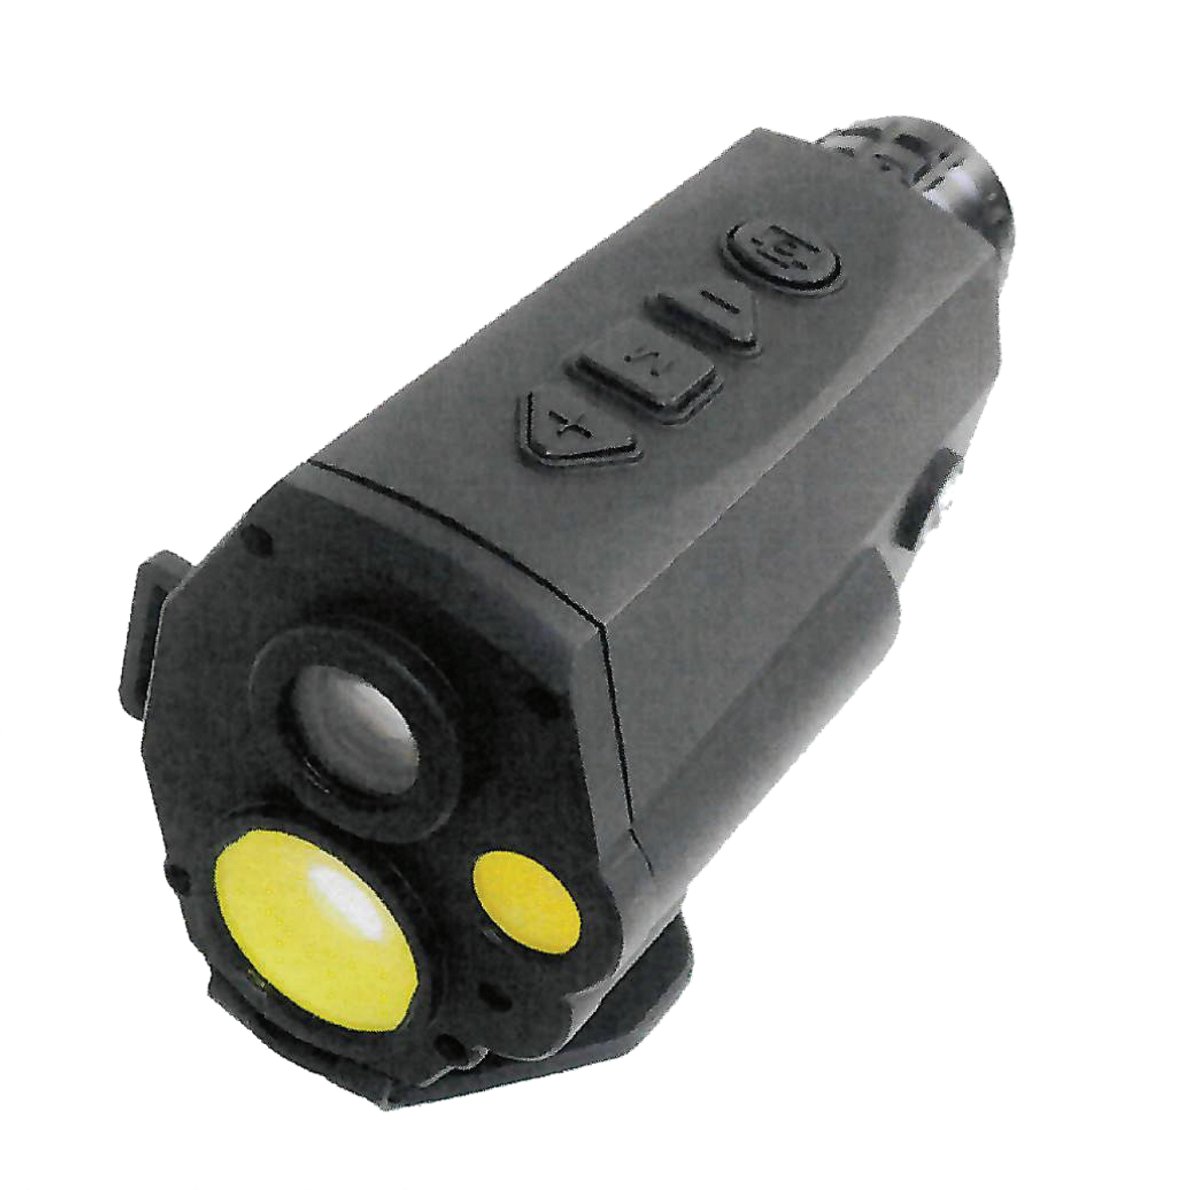 HML8 Laser Range Finder (en inglés)